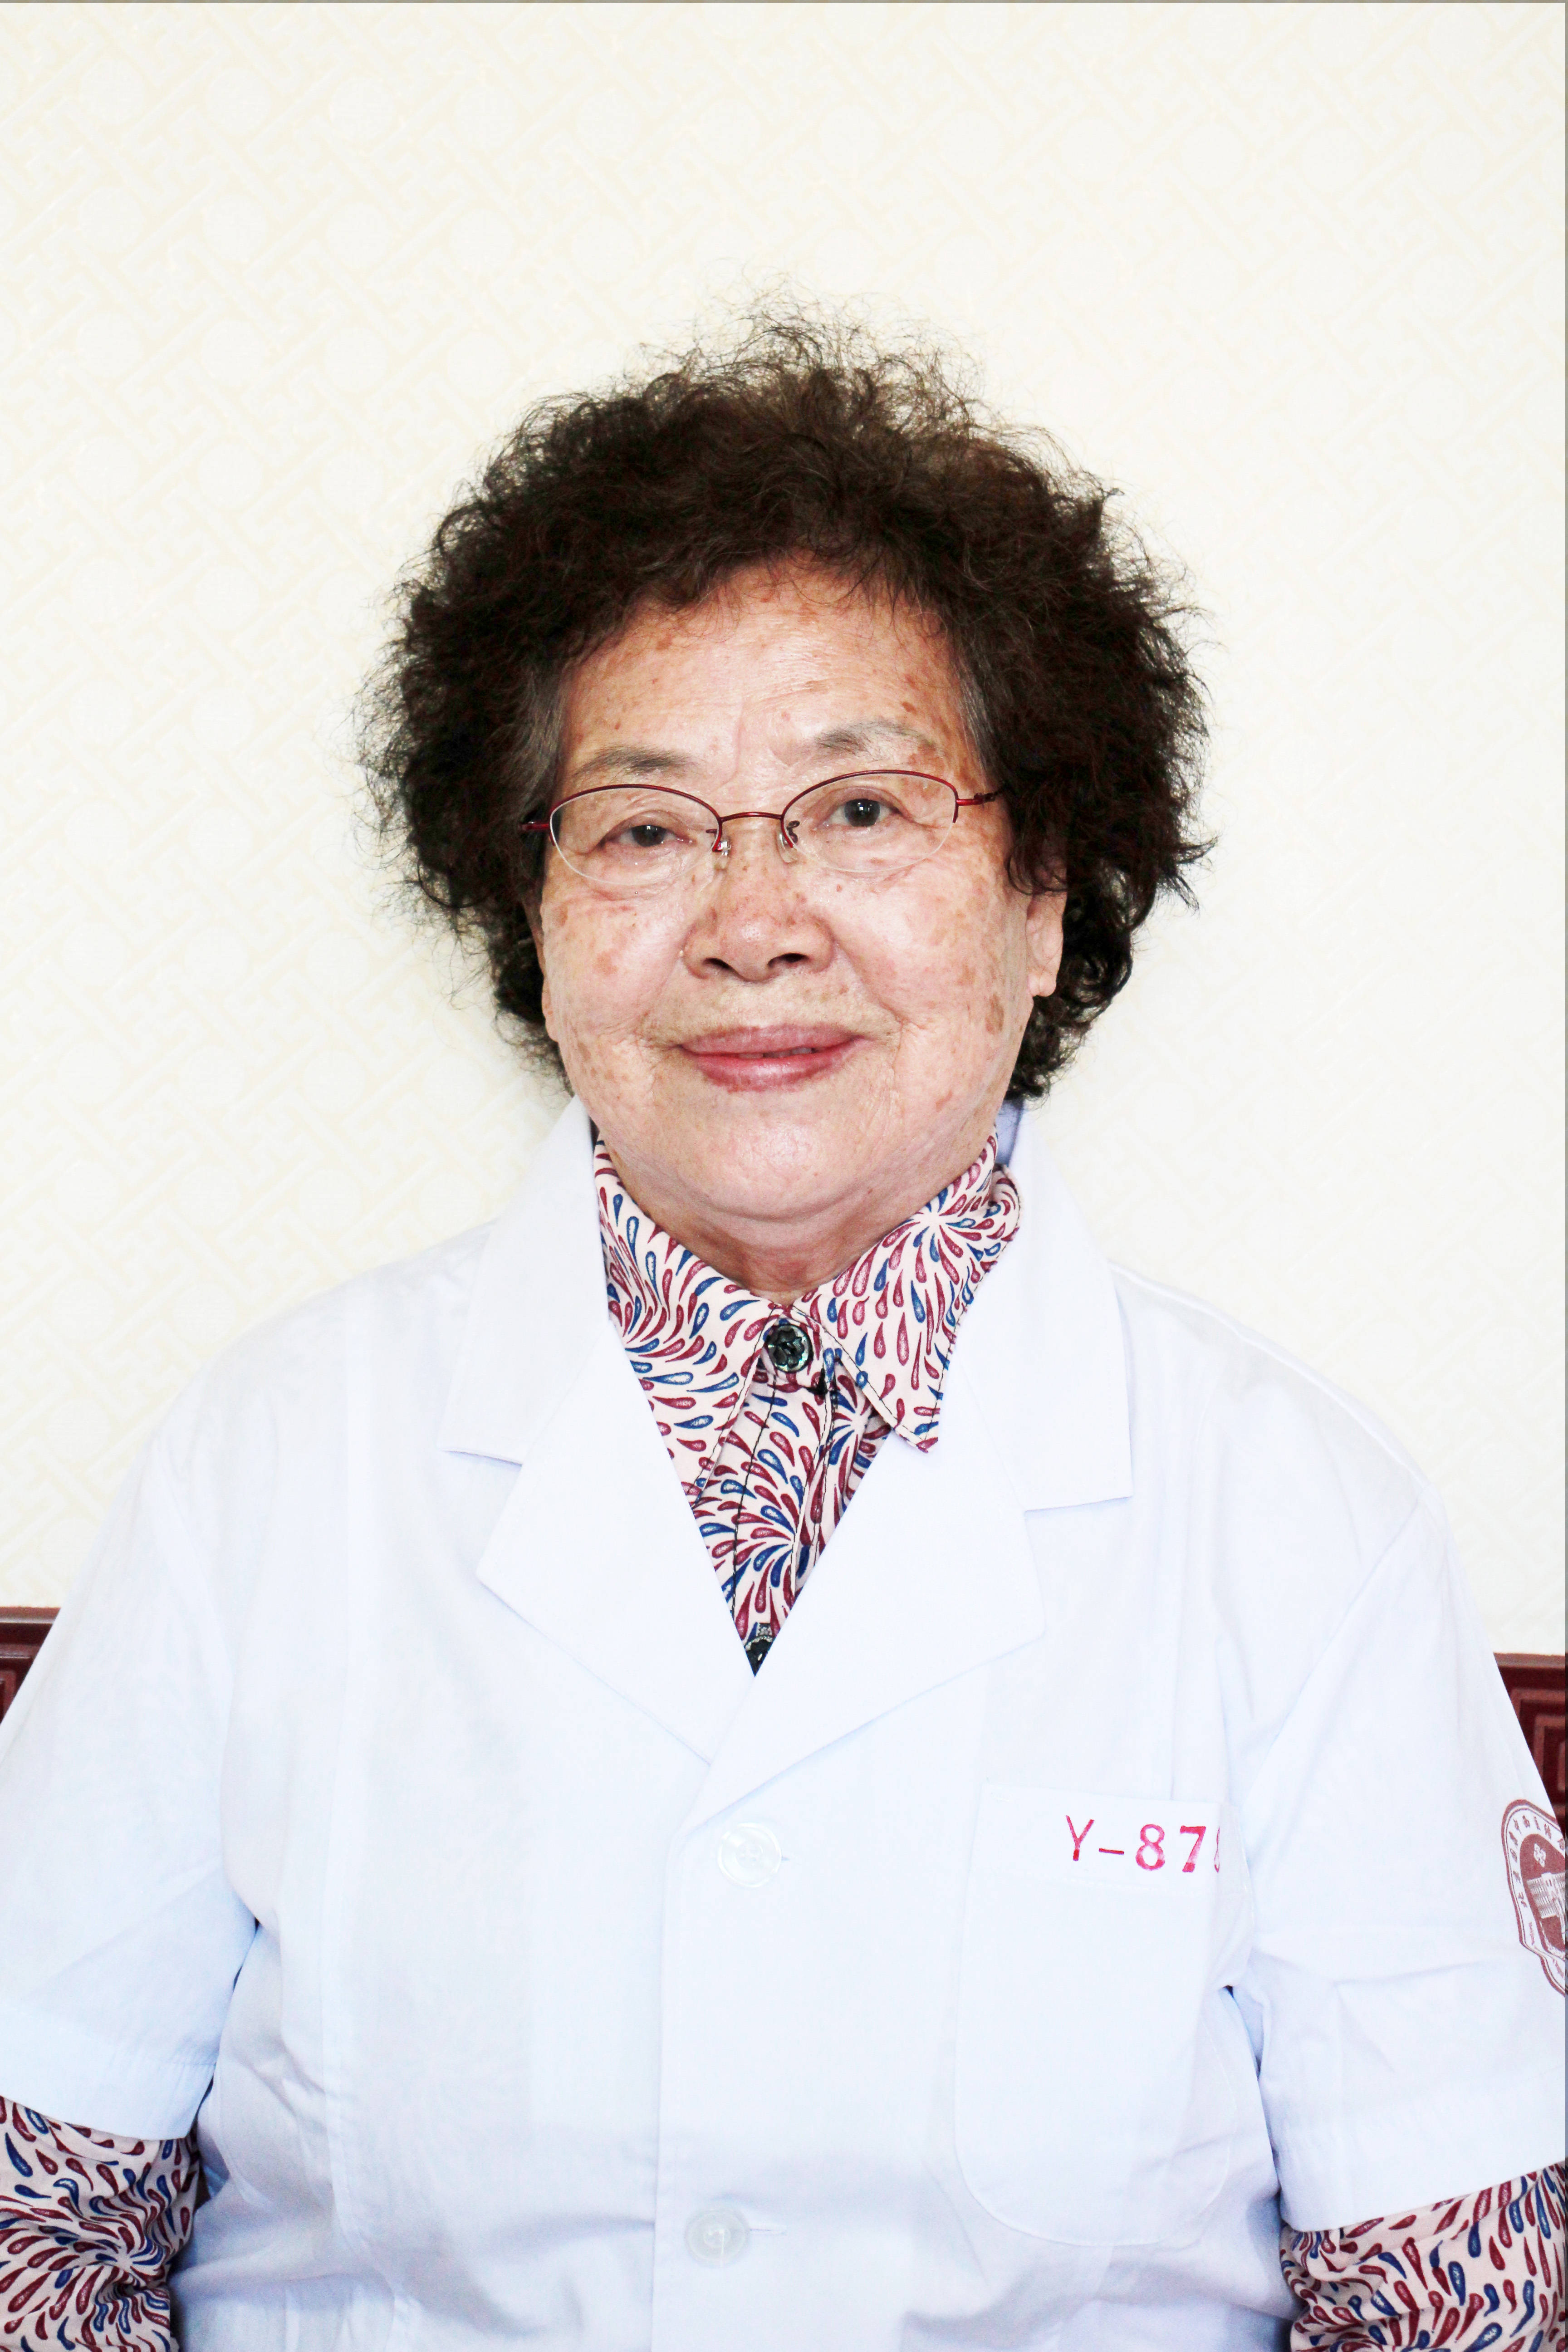 痛经十载竟是这个原因,李俊芳教授4个月解除子宫肌腺瘤痛苦